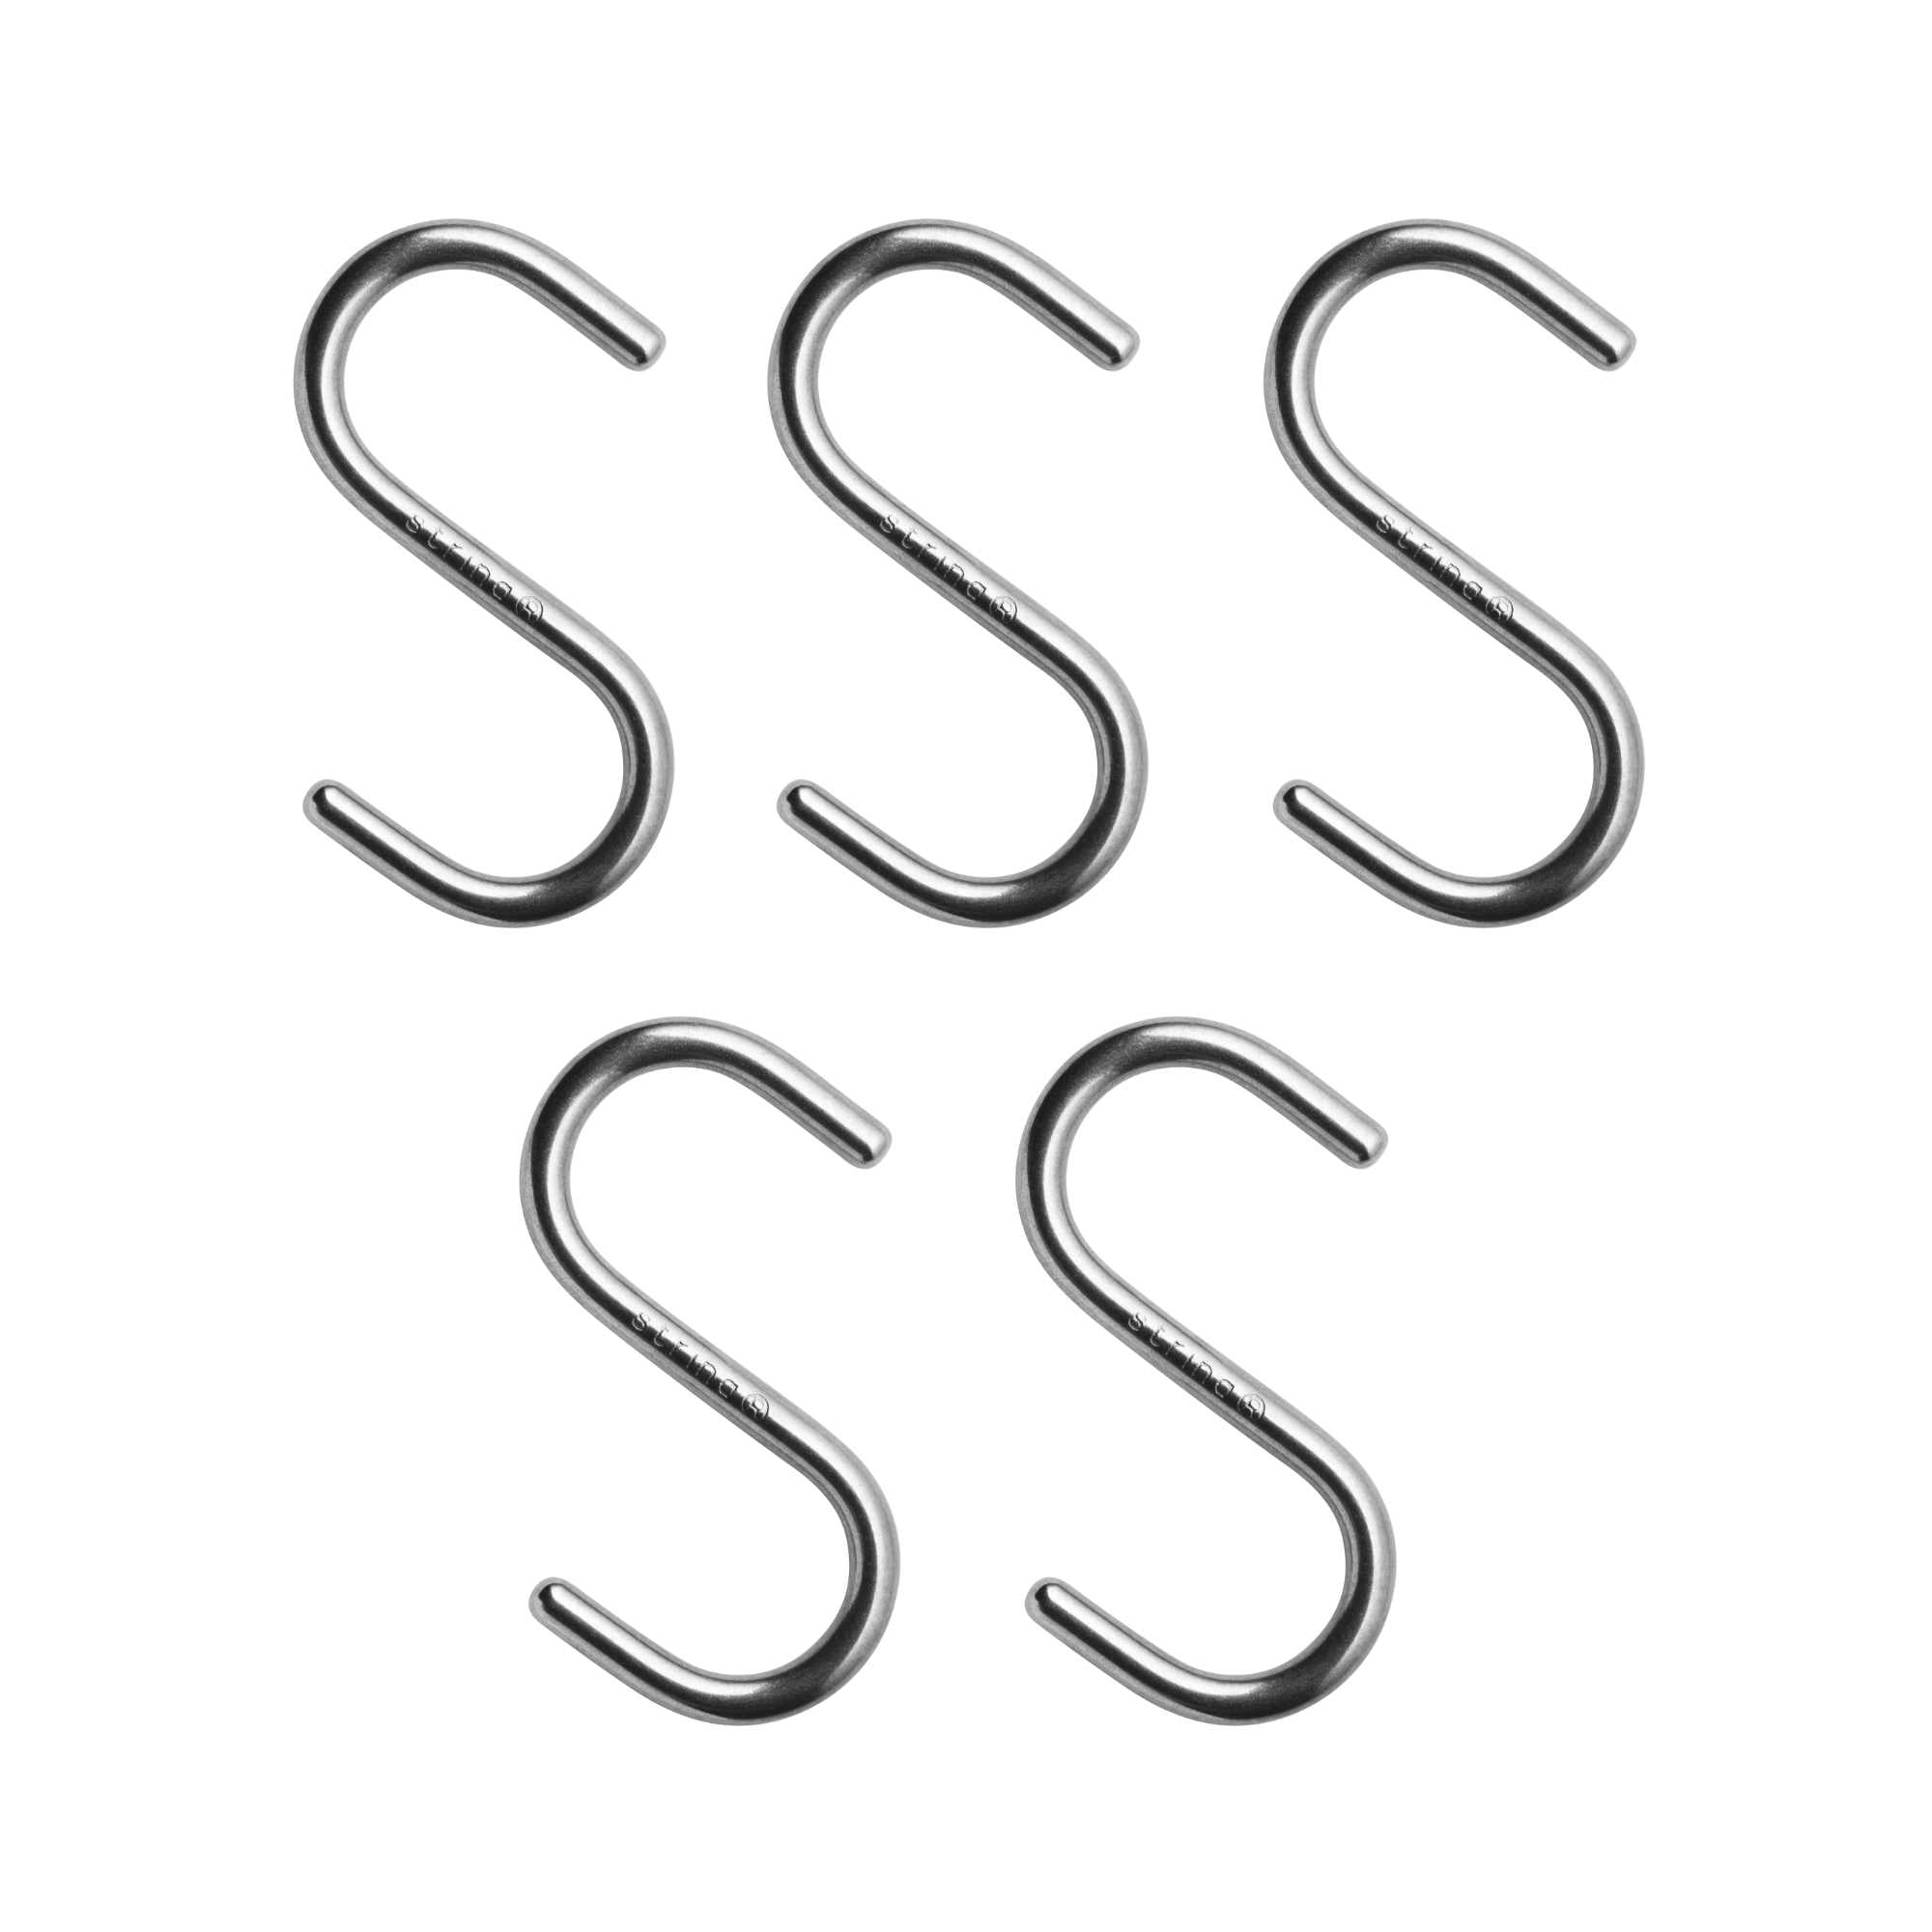 String Metal Hook S (Set of 5)